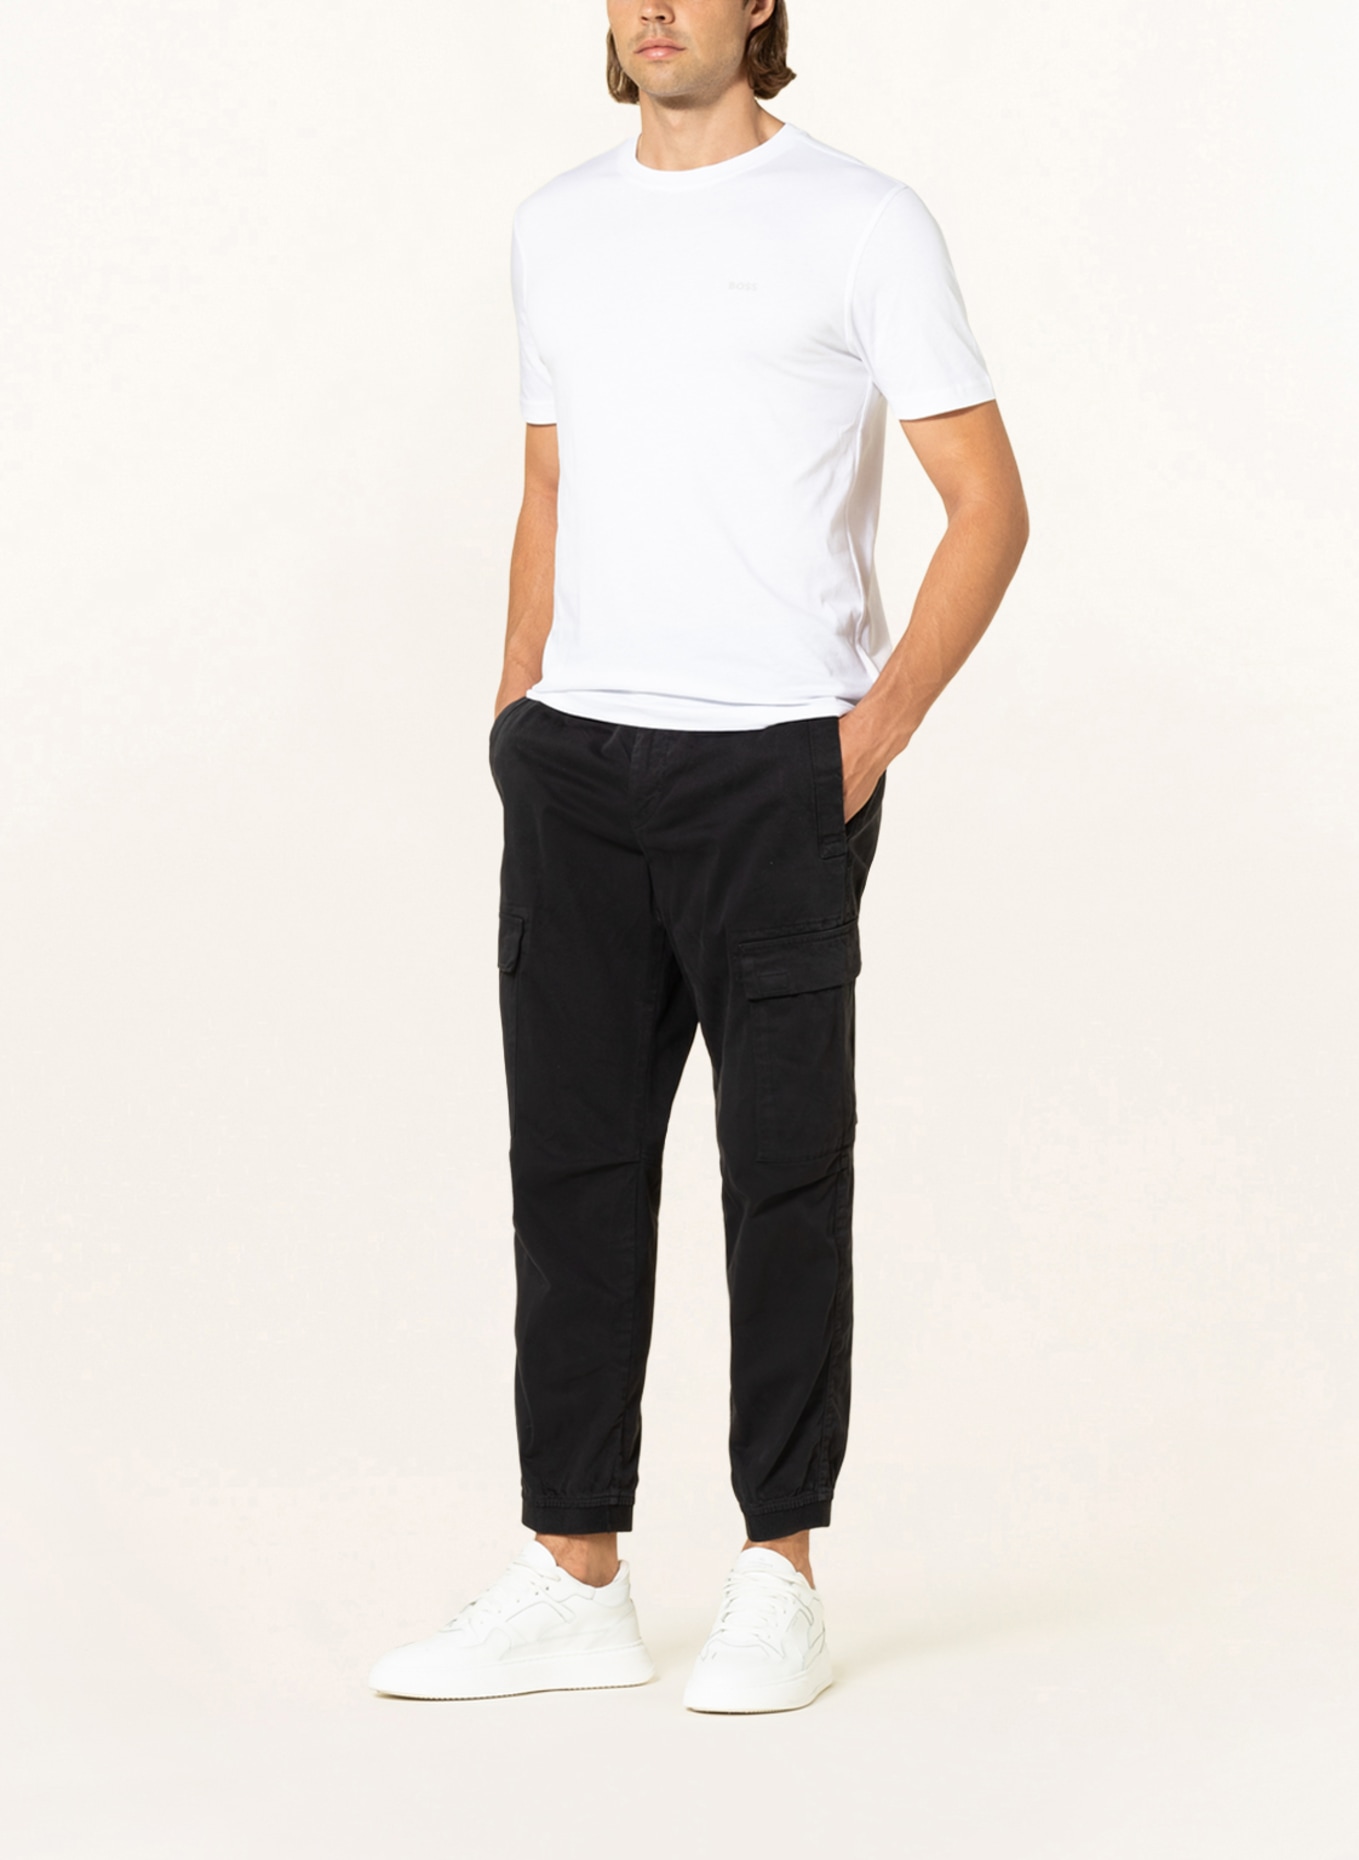 skpabo Men's Fleece Lined Warm Waterproof Trousers Thermal